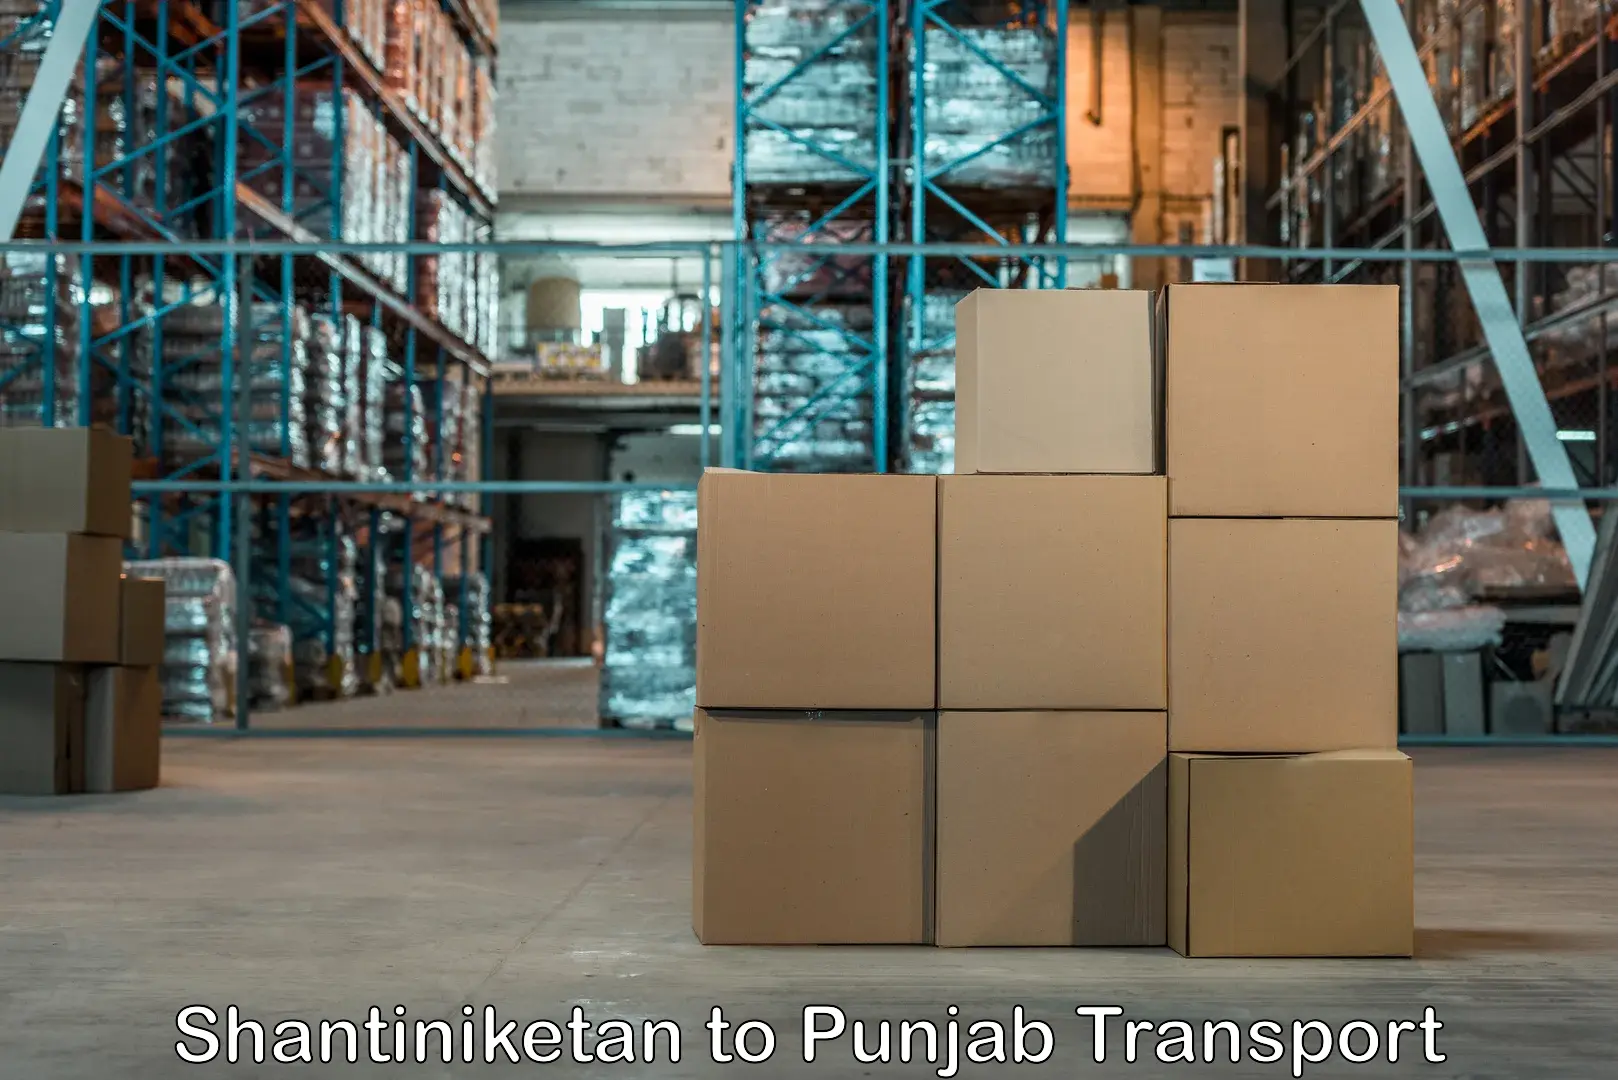 Transport in sharing Shantiniketan to Punjab